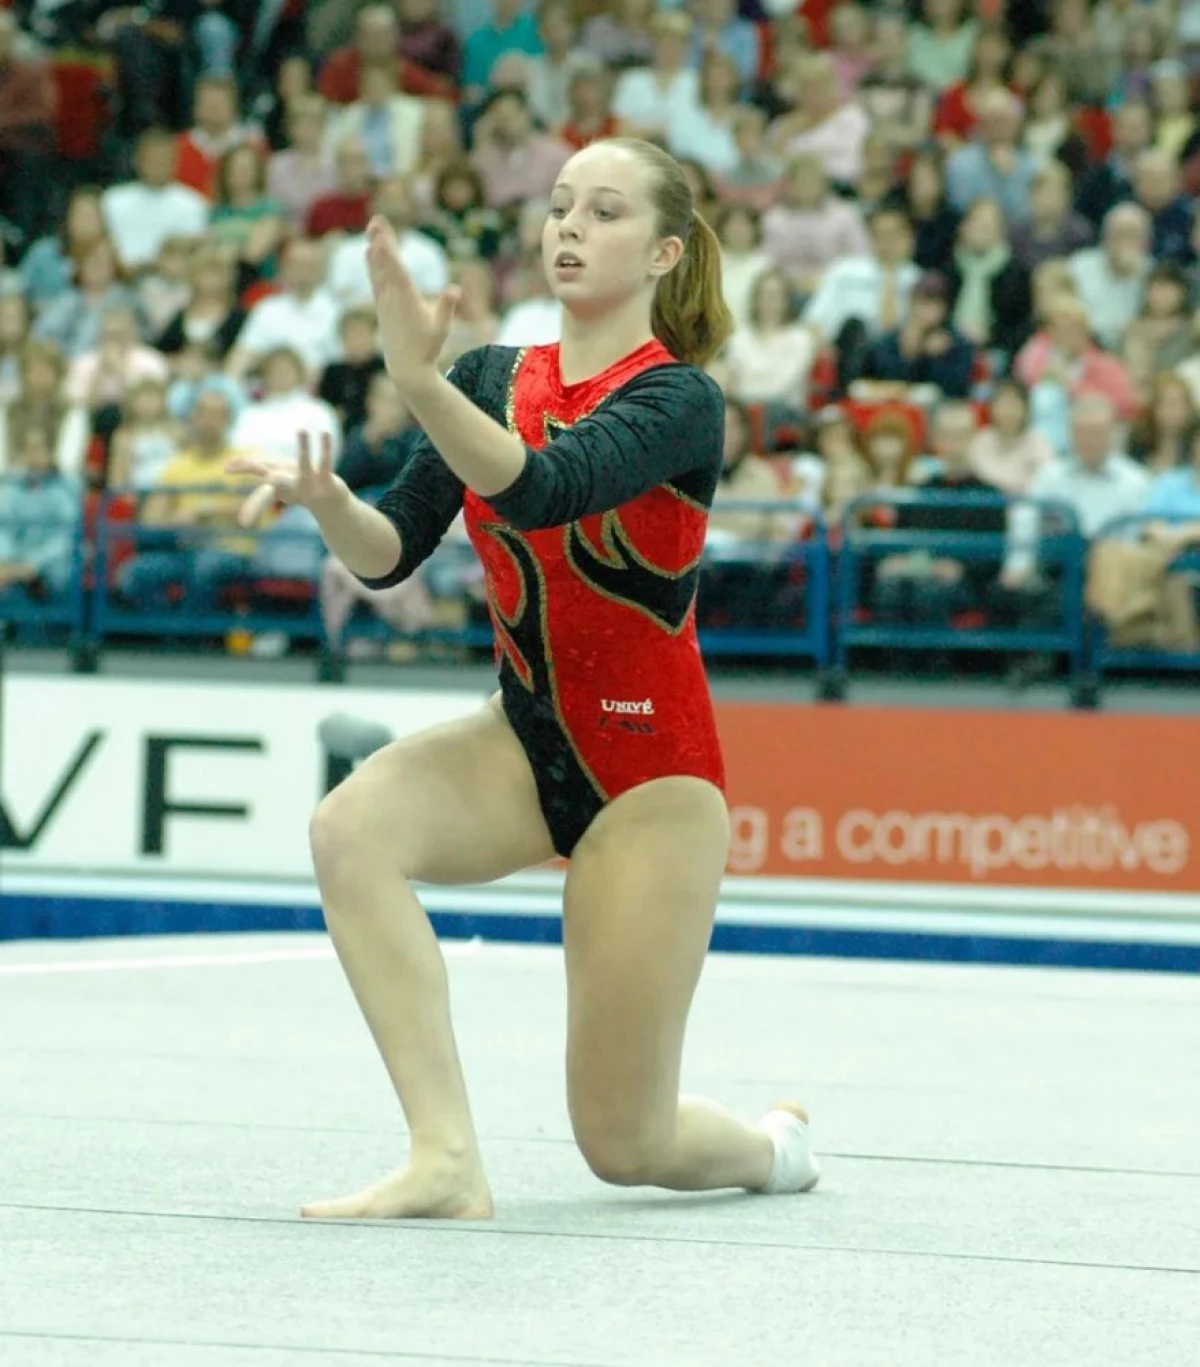 6 ข้อเท็จจริงเกี่ยวกับ Gymnast จากเนเธอร์แลนด์ซึ่งกลายเป็นดาราหนังโป๊ 19883_2